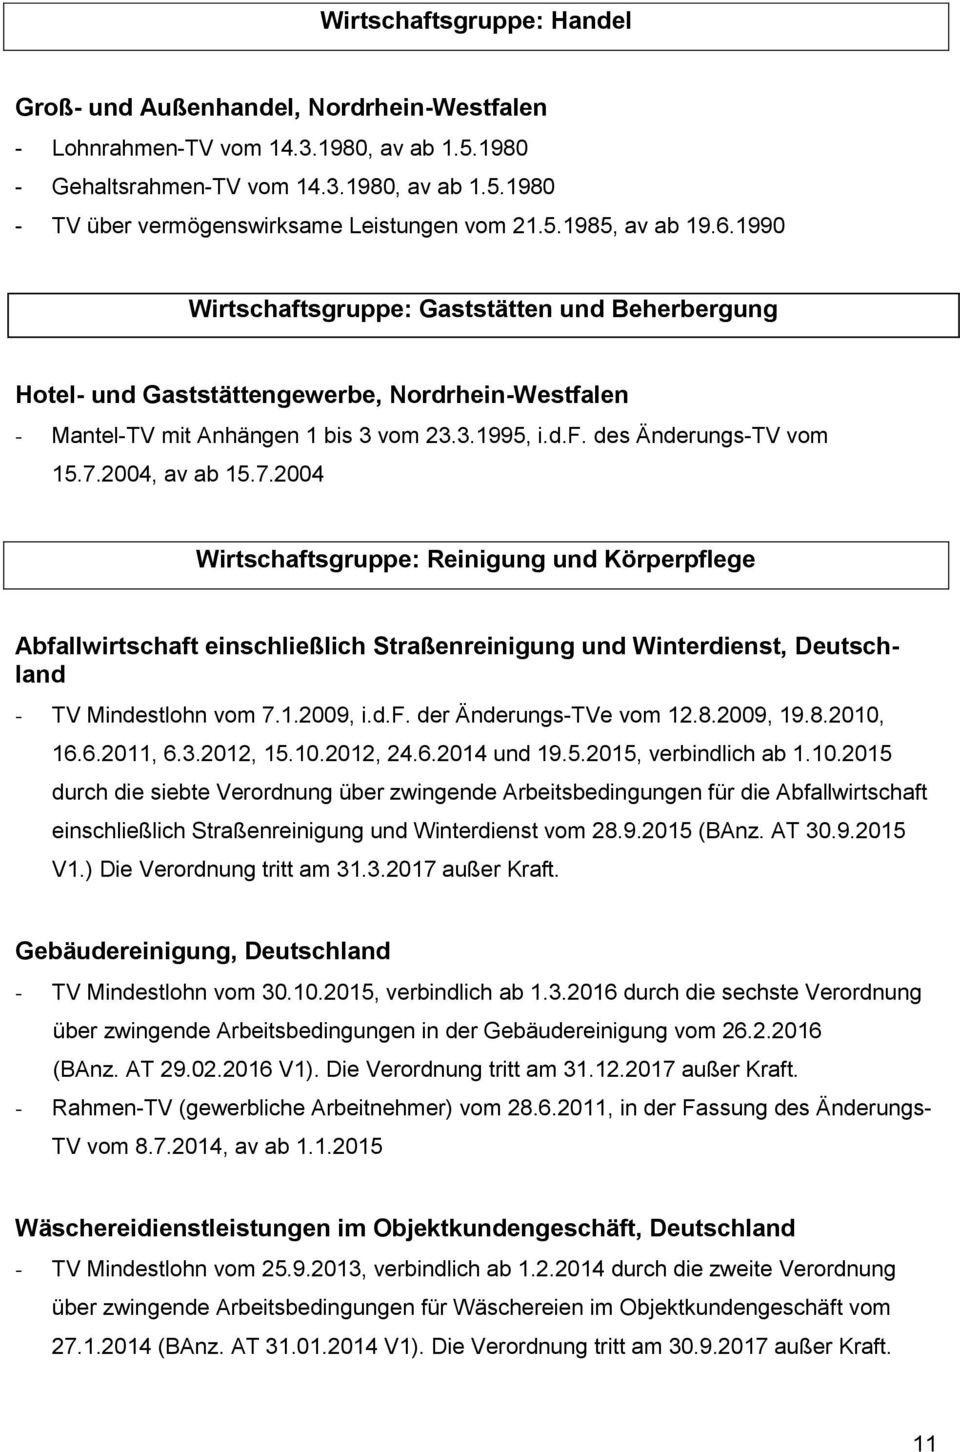 7.2004, av ab 15.7.2004 Wirtschaftsgruppe: Reinigung und Körperpflege Abfallwirtschaft einschließlich Straßenreinigung und Winterdienst, Deutschland - TV Mindestlohn vom 7.1.2009, i.d.f. der Änderungs-TVe vom 12.